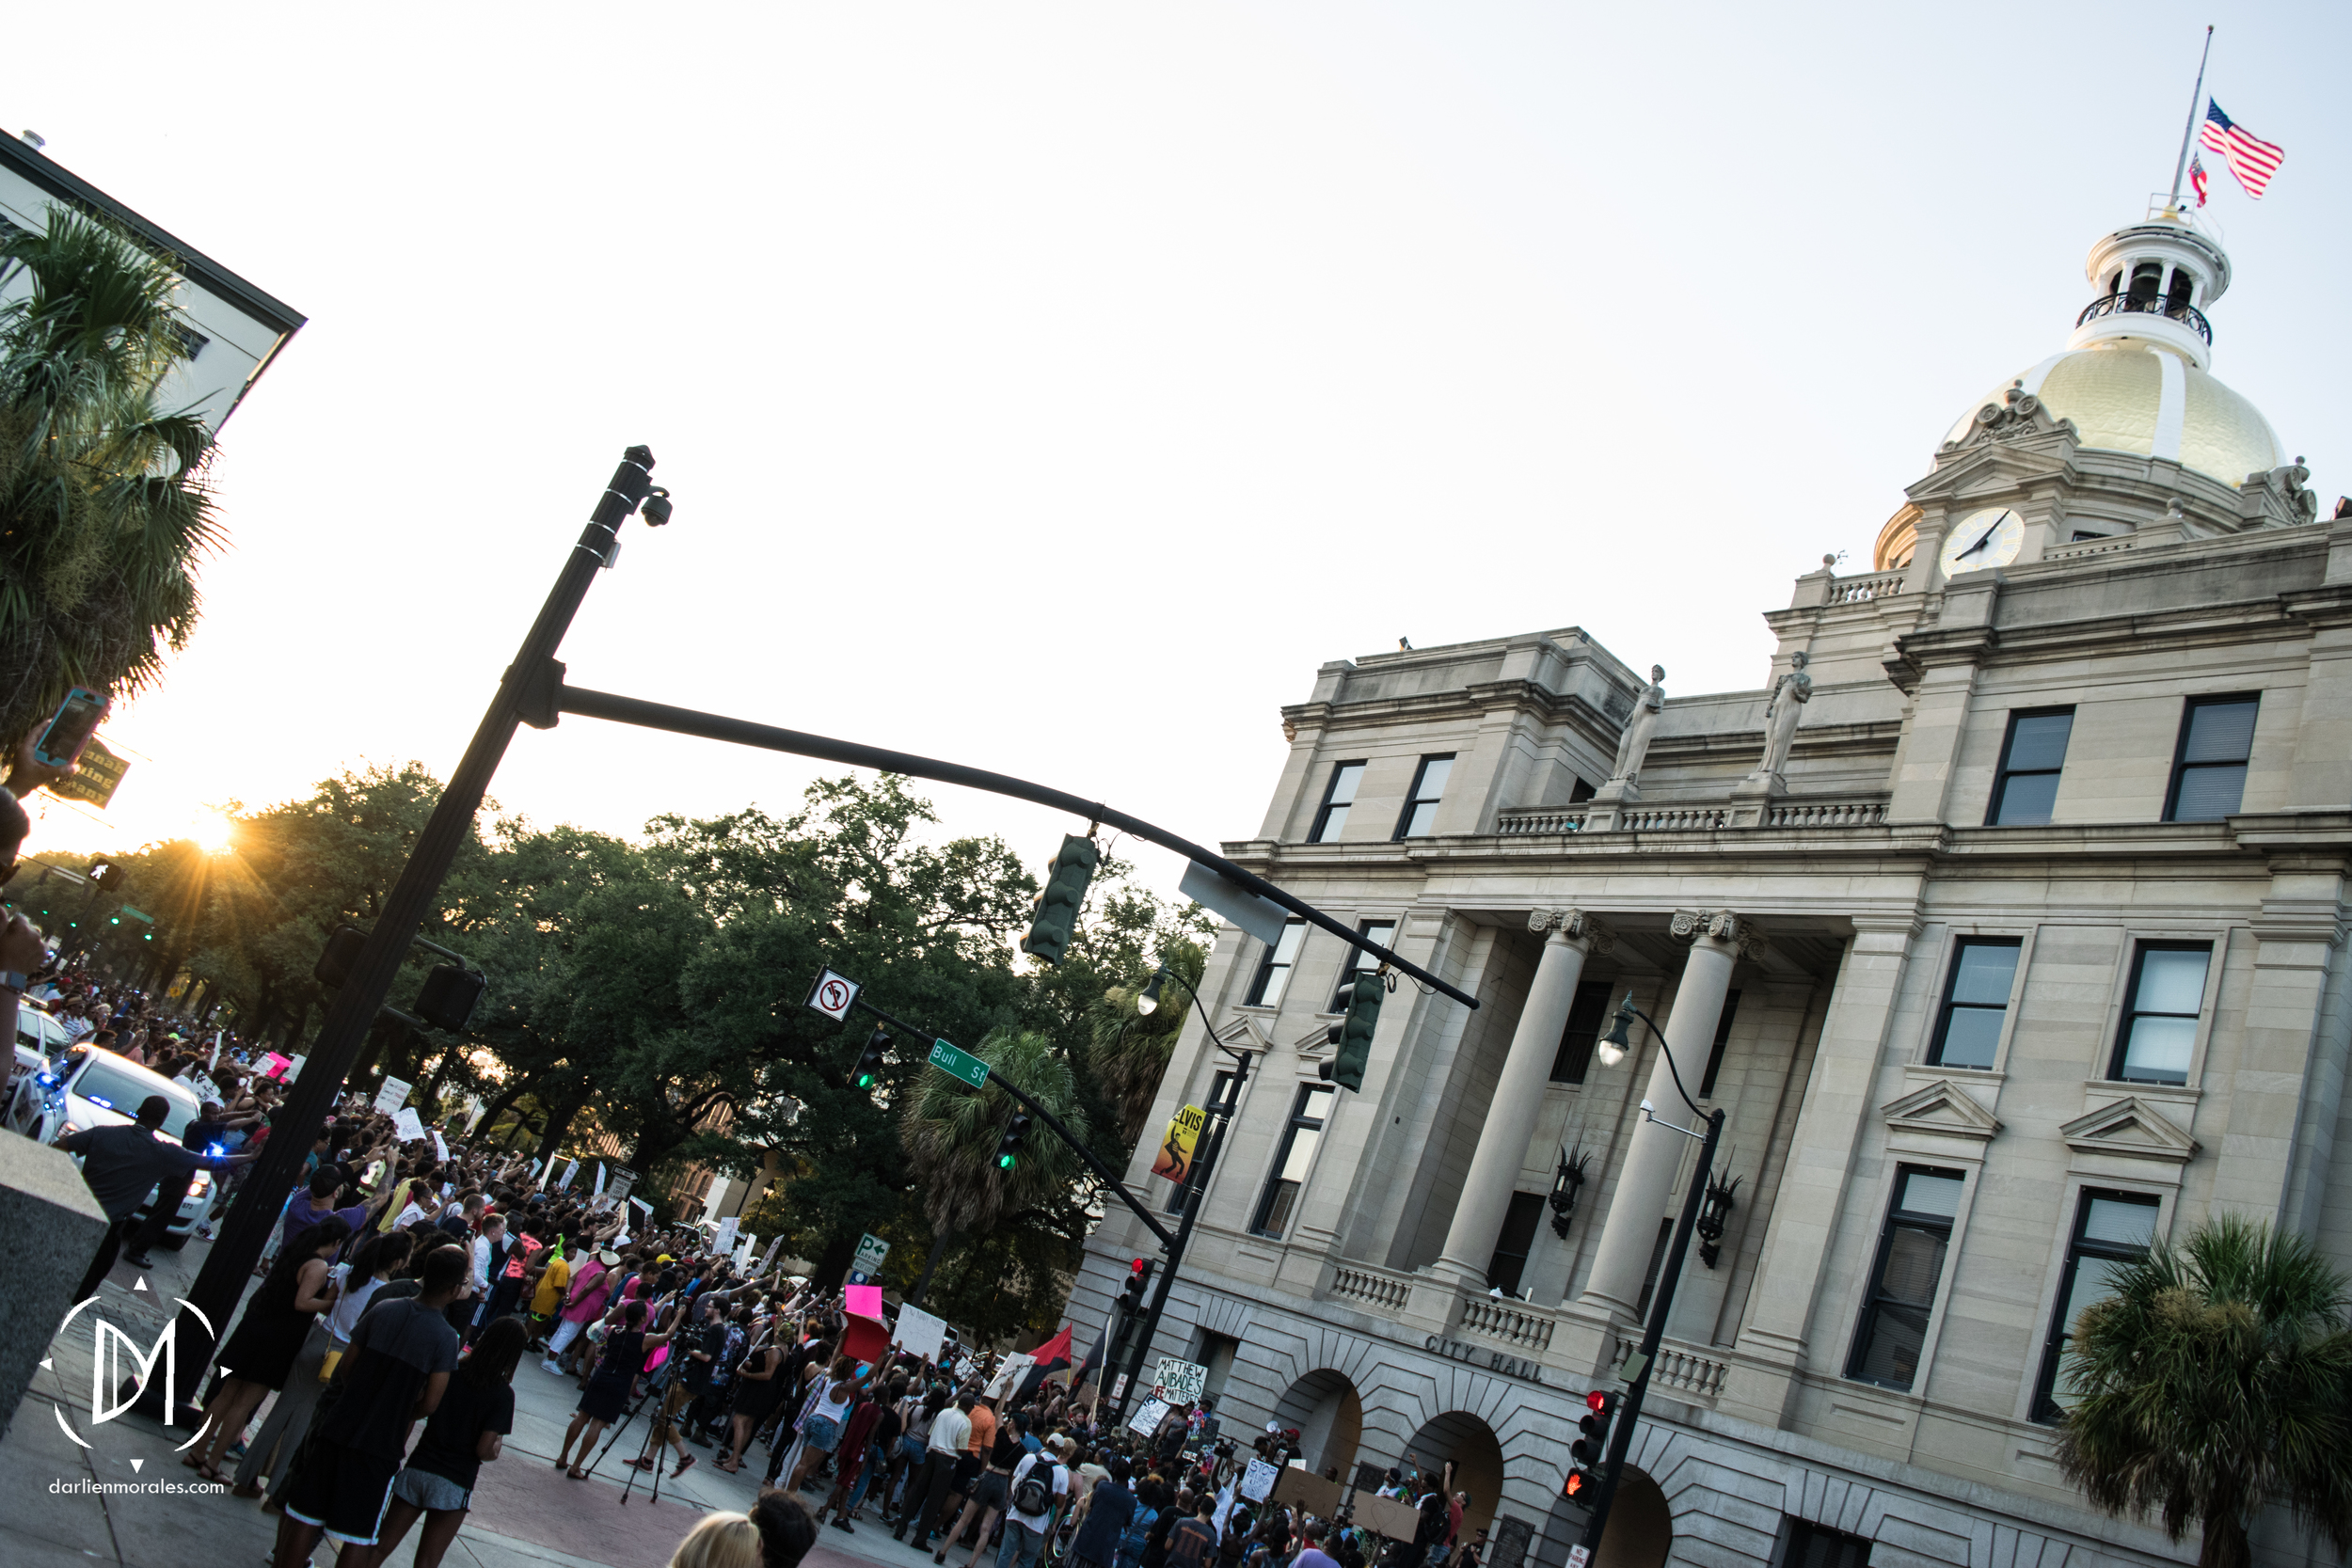   Protestors arrive at City Hall.&nbsp;    -July 12, 2016  